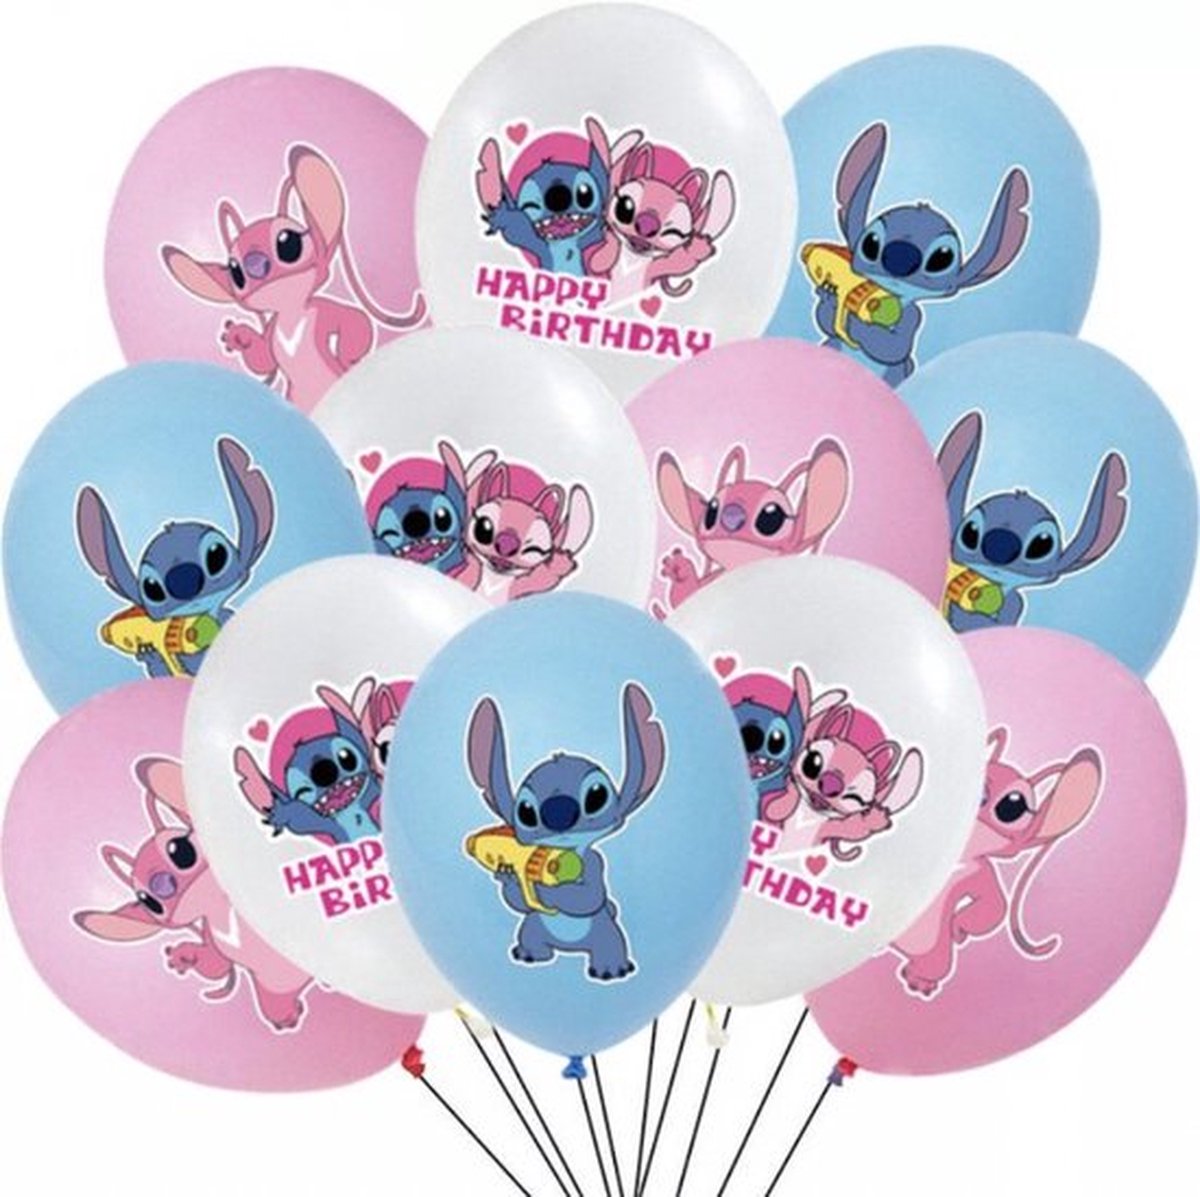 ballon stitch helium anniversaire enfant lilo decoration 1 Pièce